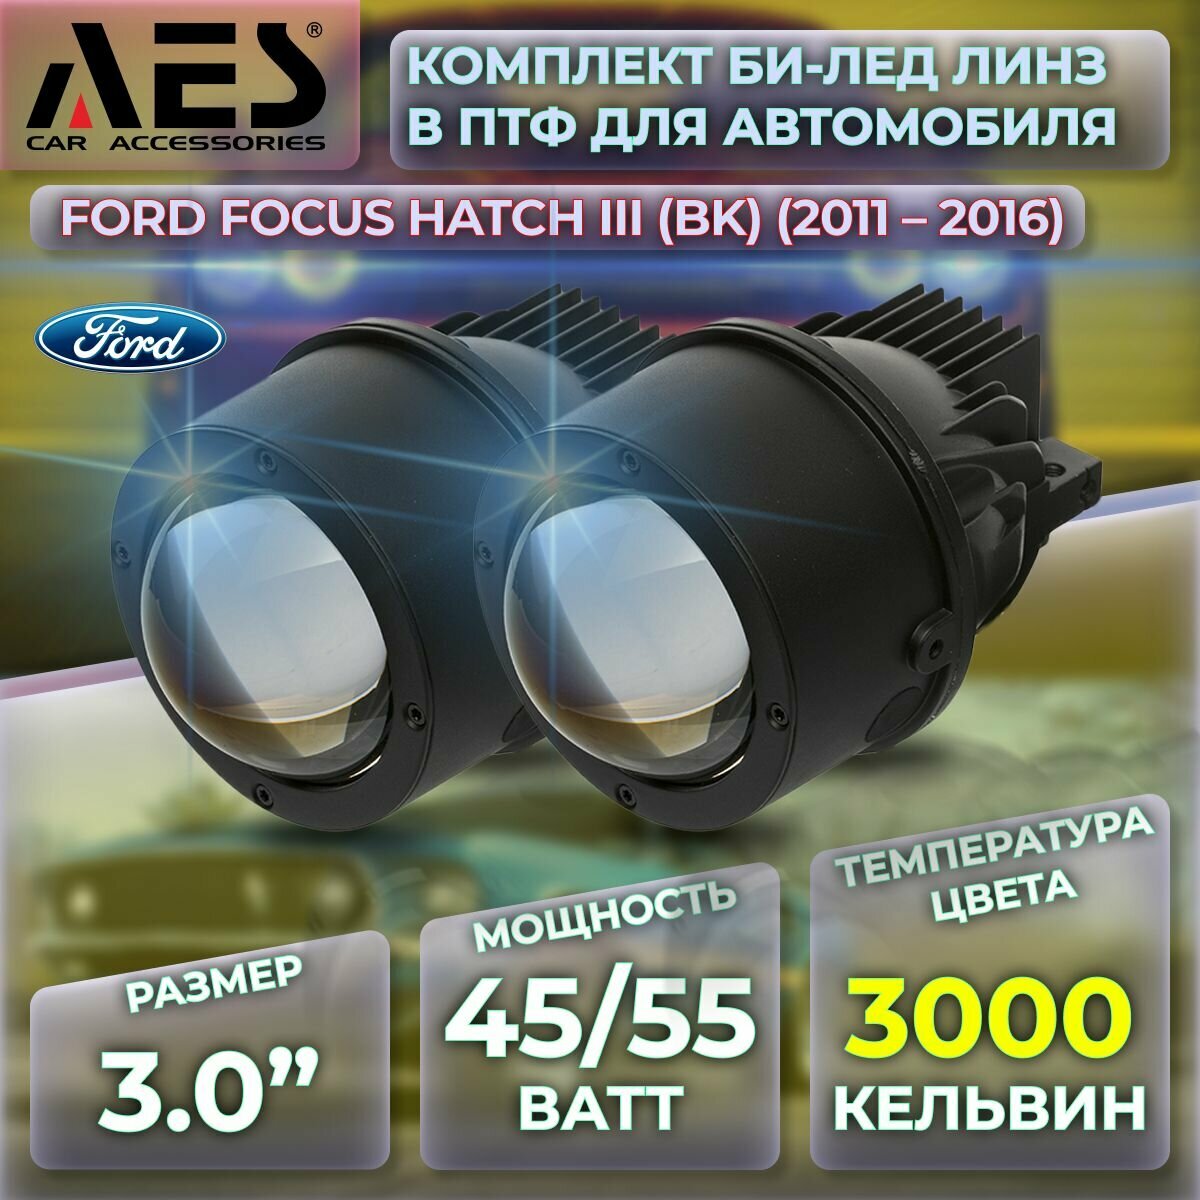 Комплект Би-лед линз в ПТФ для Ford Focus хэтчбек III (BK) (2011-2016) Q8 Foglight Bi-LED Laser 3000K (2 модуля, 2 кронштейна)